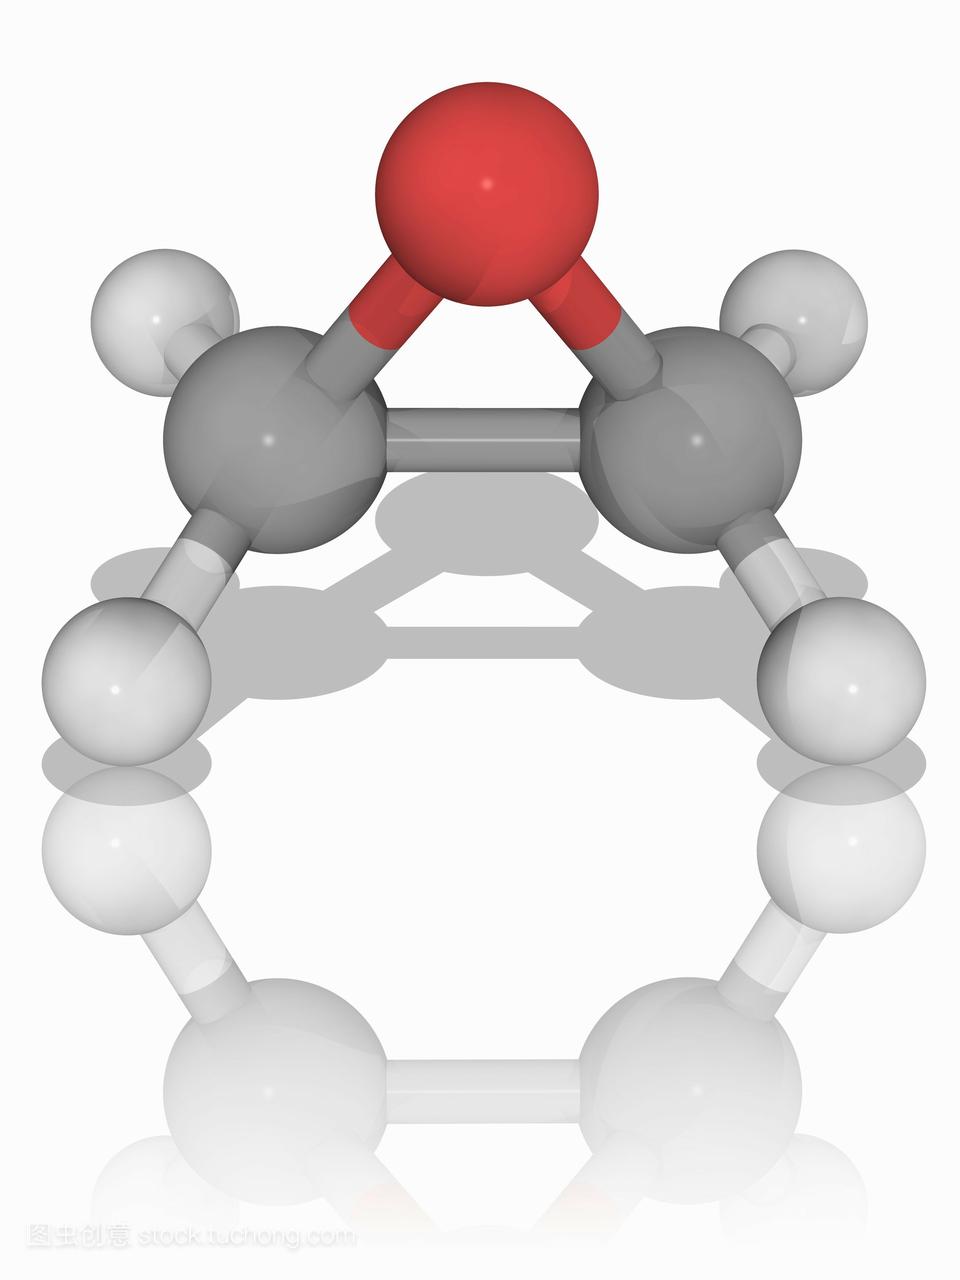 环氧乙烷。环氧乙烷c2h4o的分子模型,也称为氧